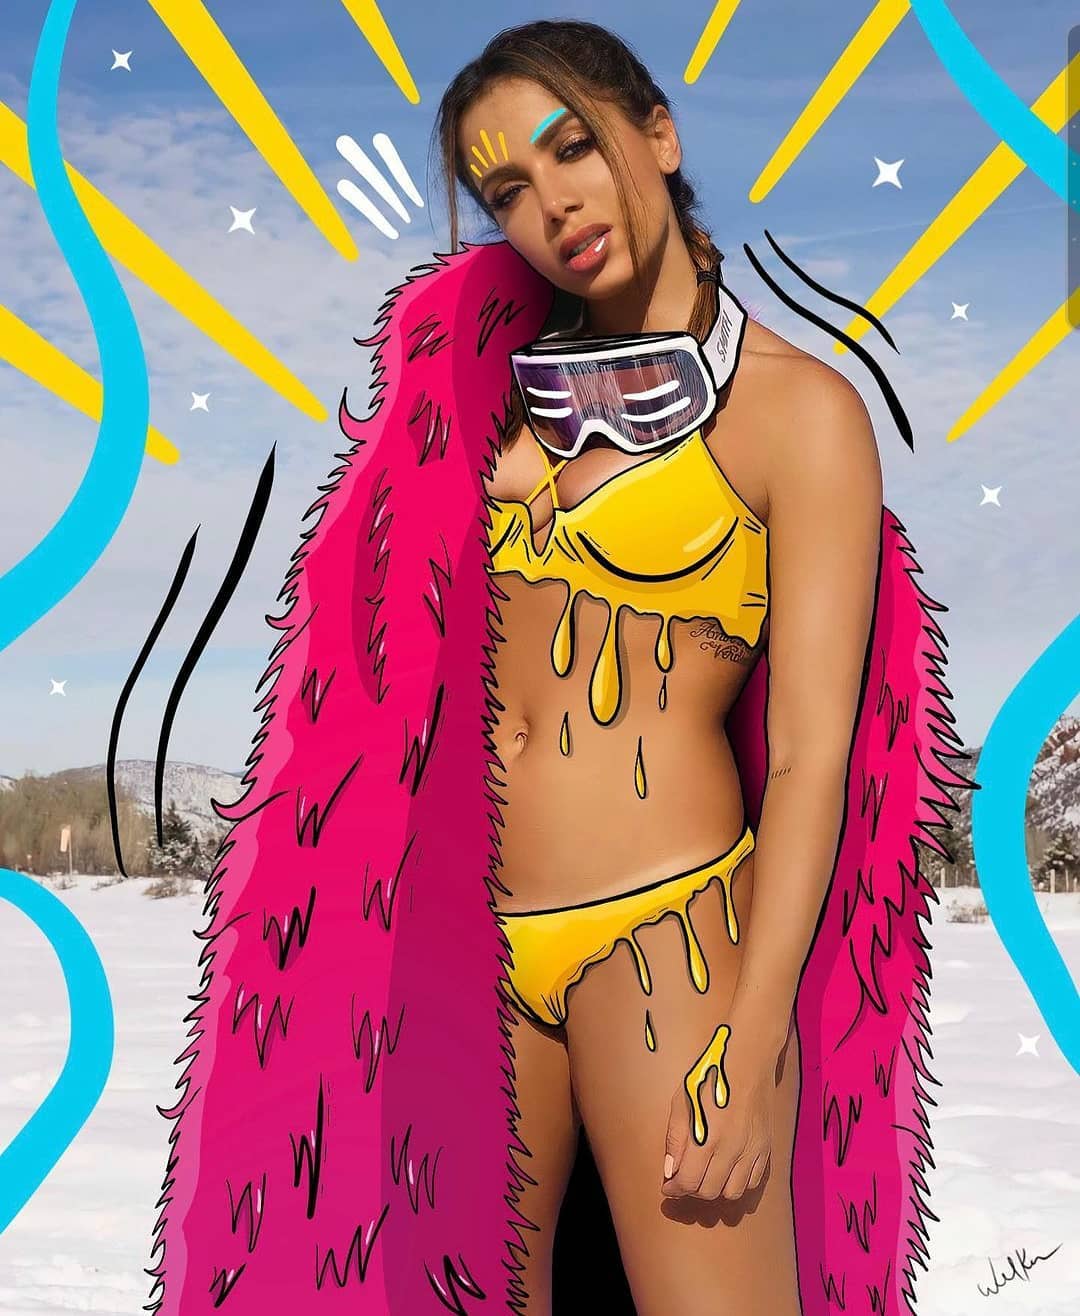 Cantora Anitta usando biquíni no gelo.